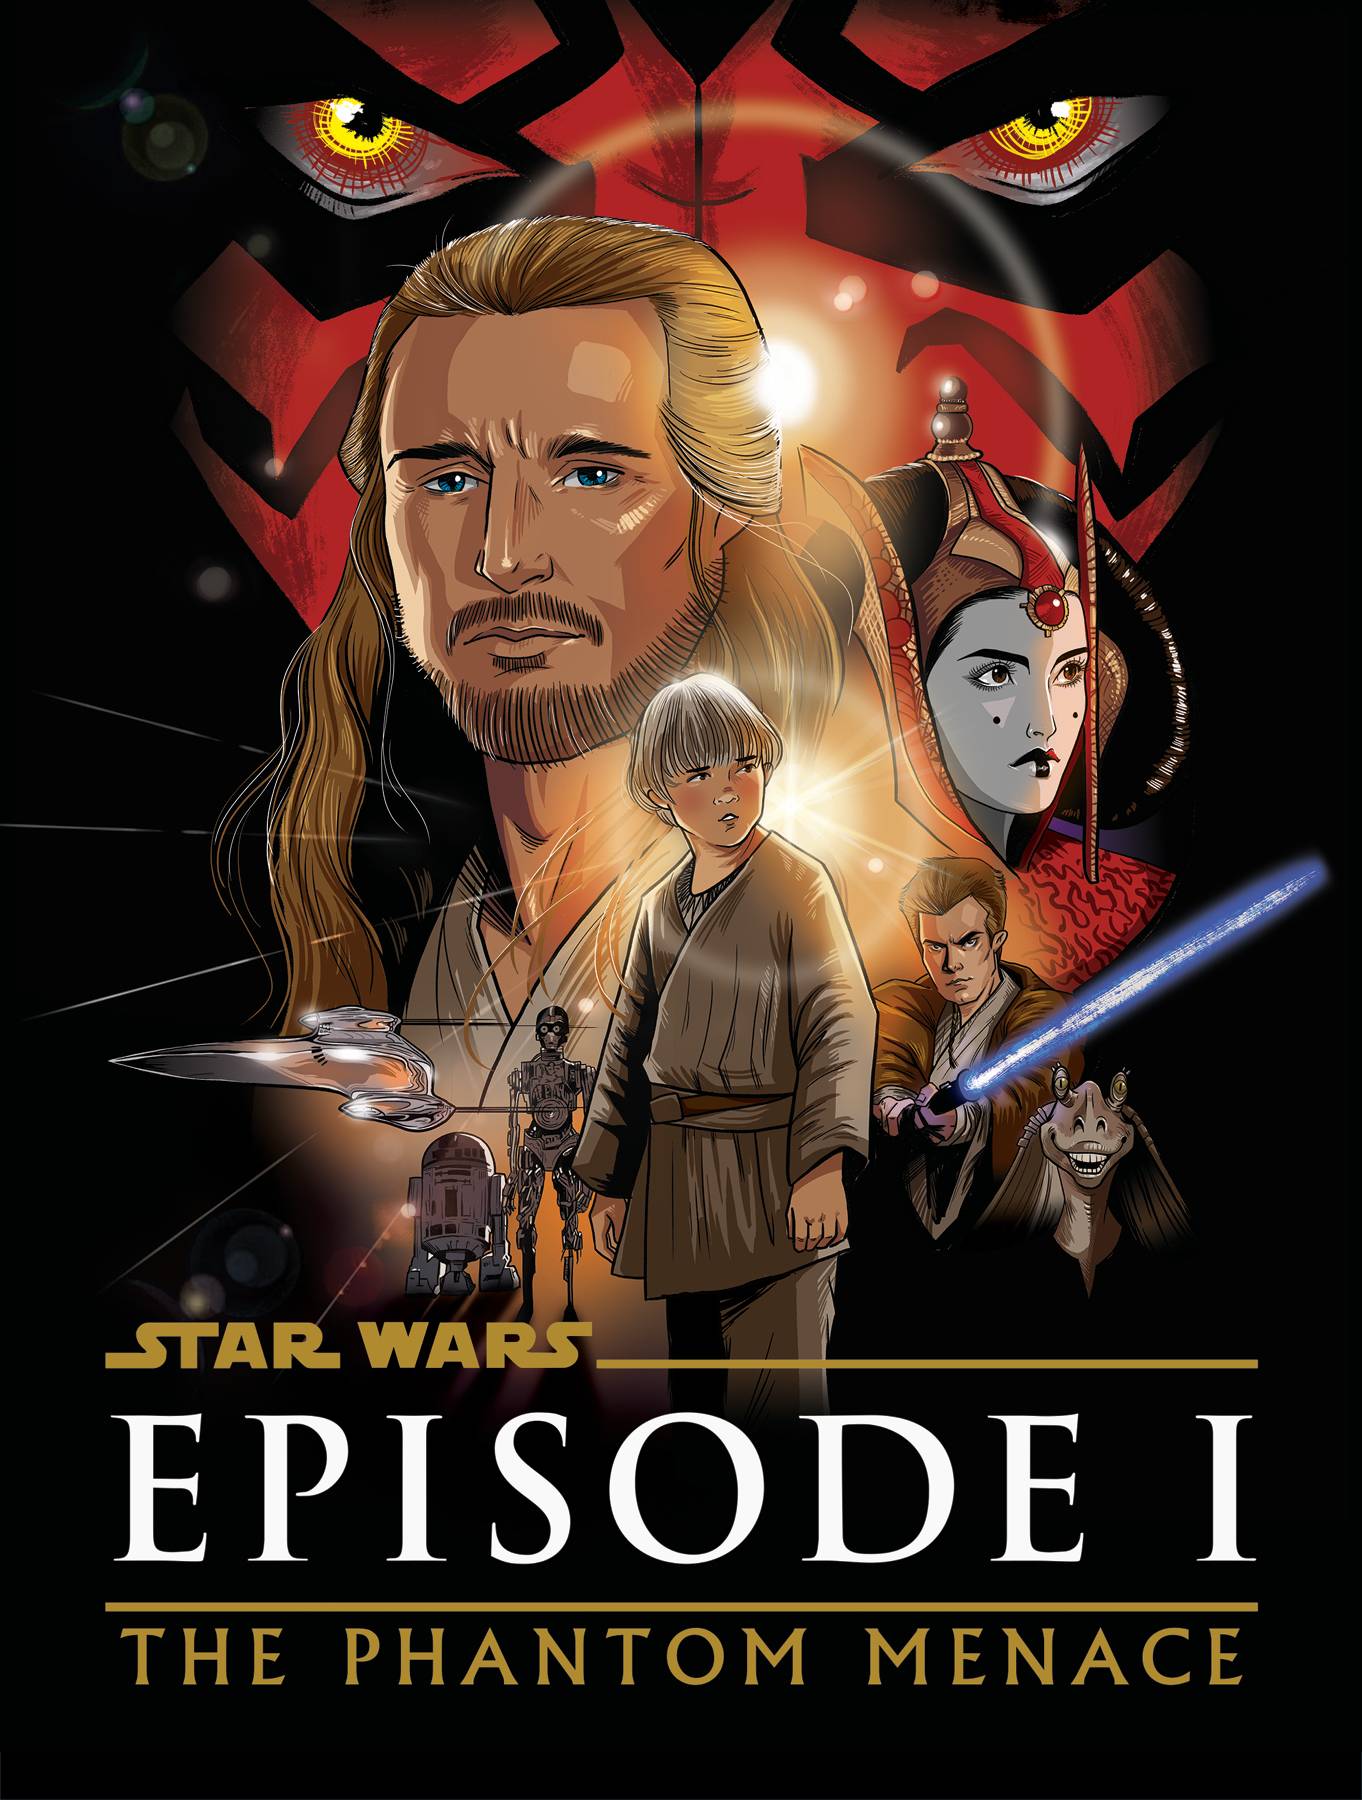 Star Wars: Episode I - The Phantom Menace - Graphic Novel Adaptation